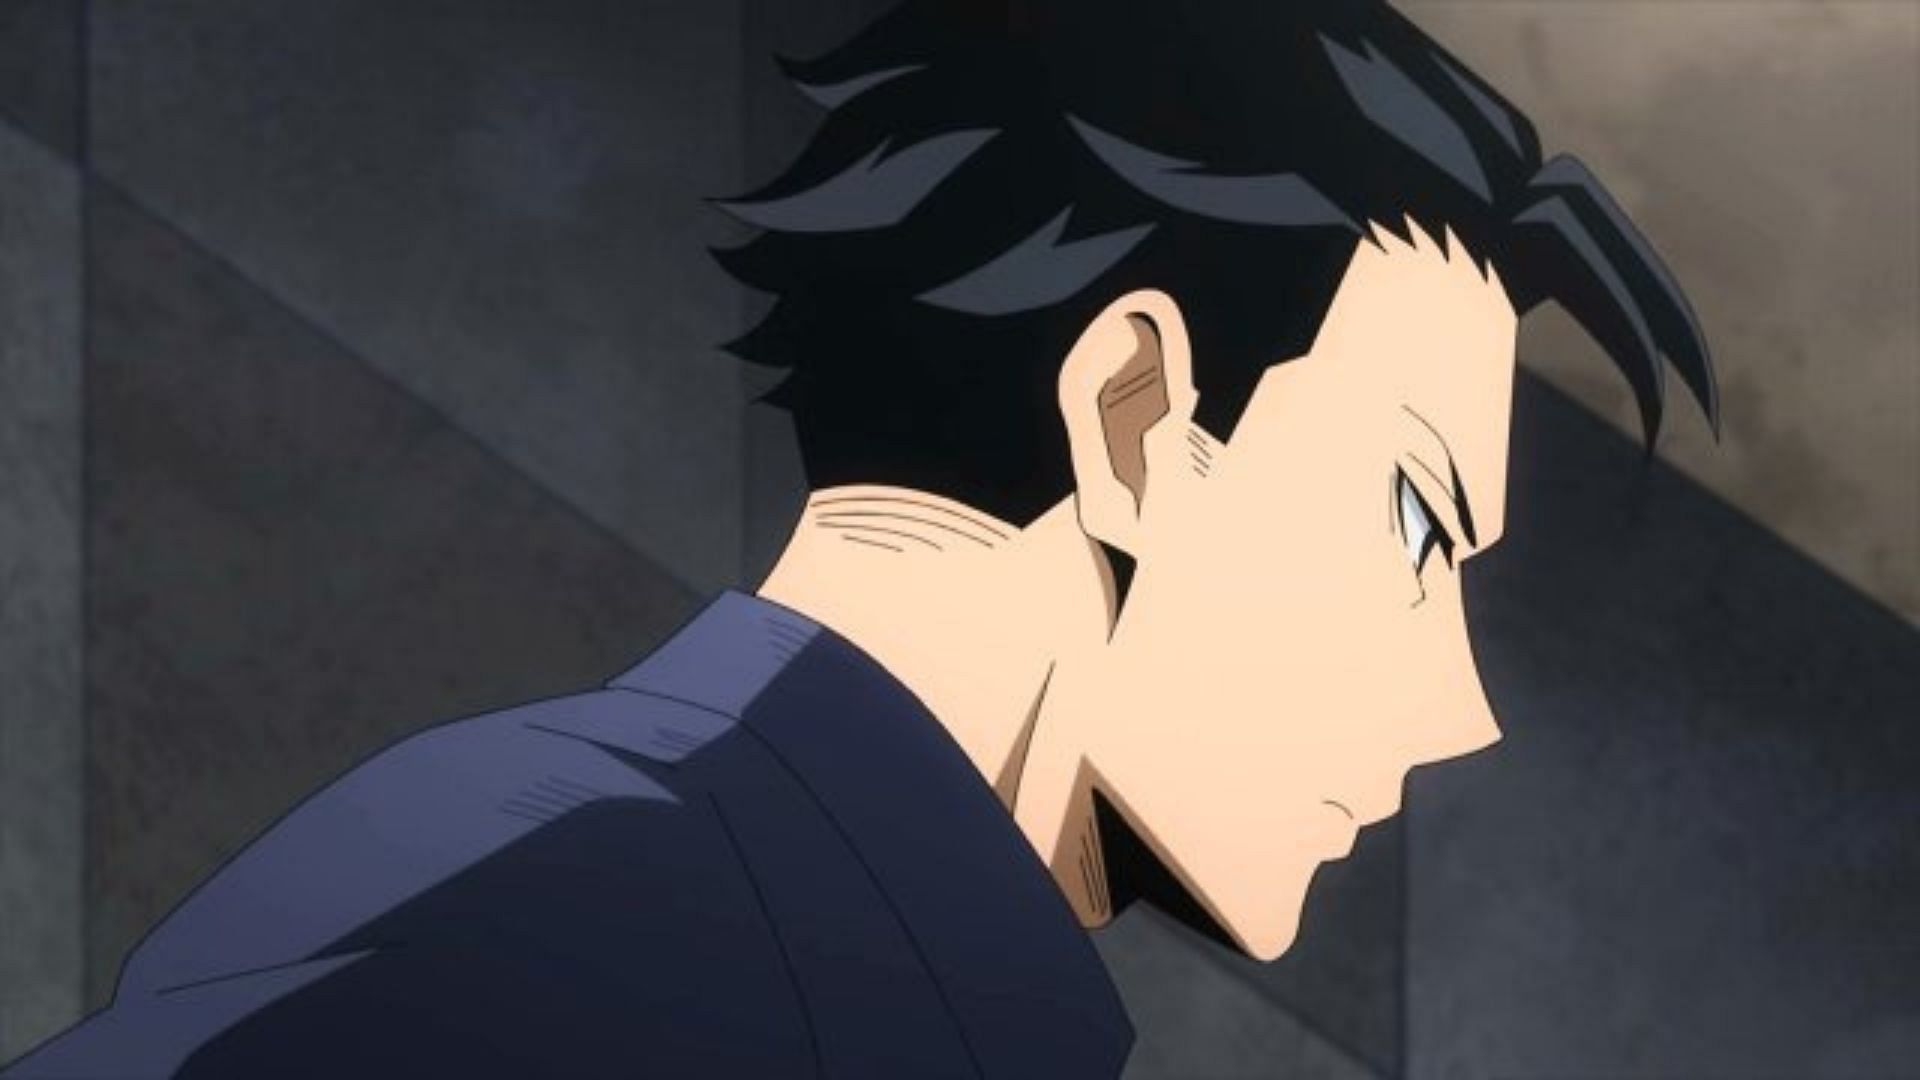 Kotaro Shimura as shown in the anime (Image via Studio Bones)